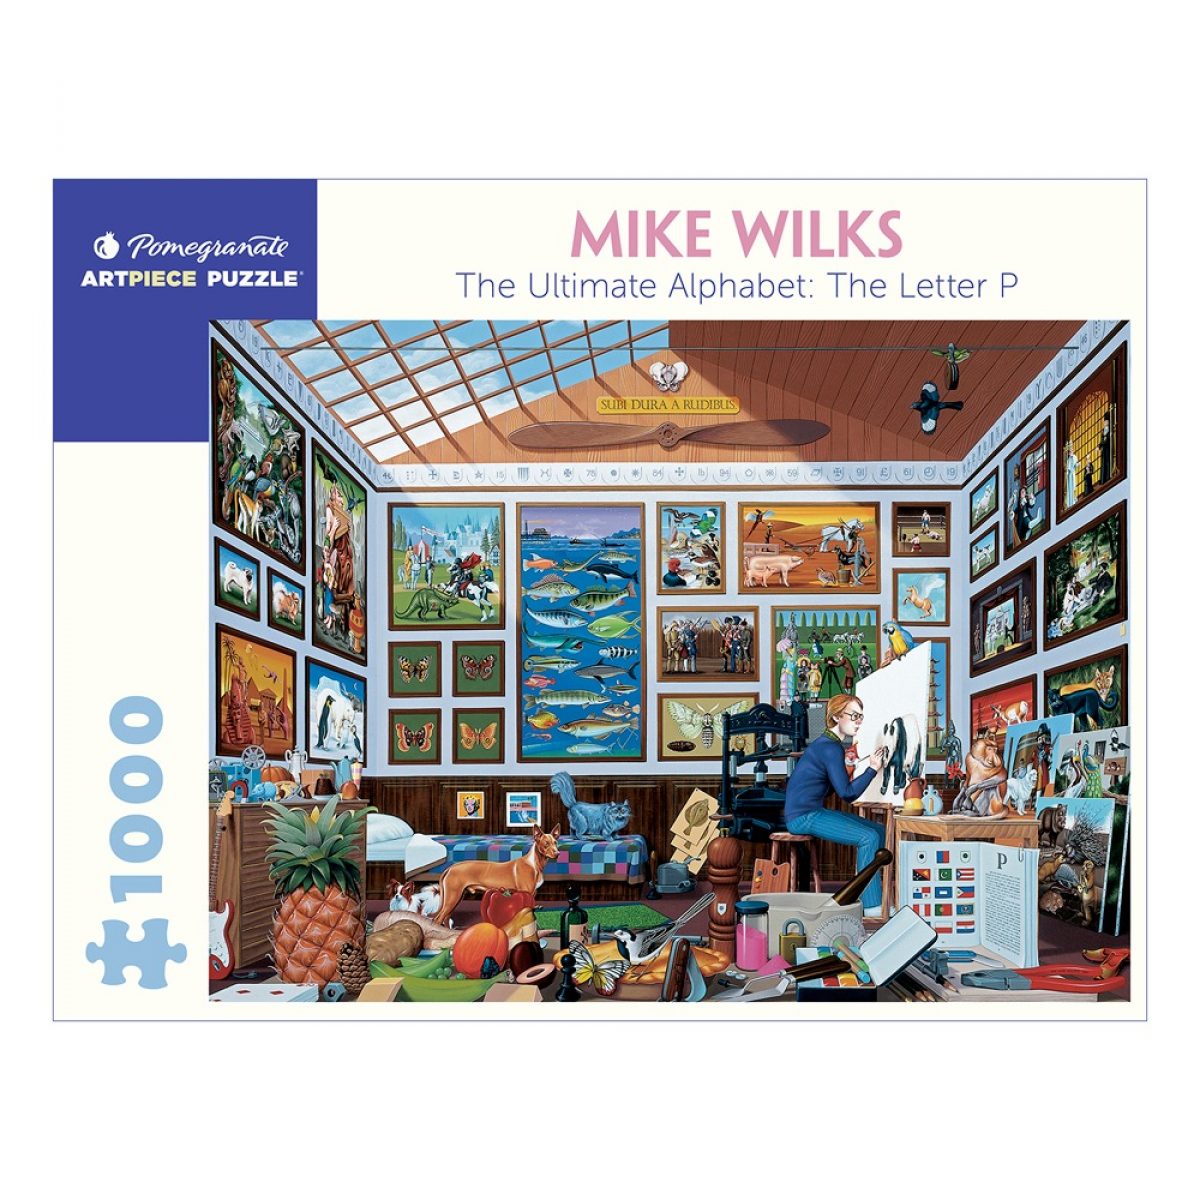 Mike Wilks The Letter P 1000 Piece Jigsaw Puzzle Simon Lucas Bridge